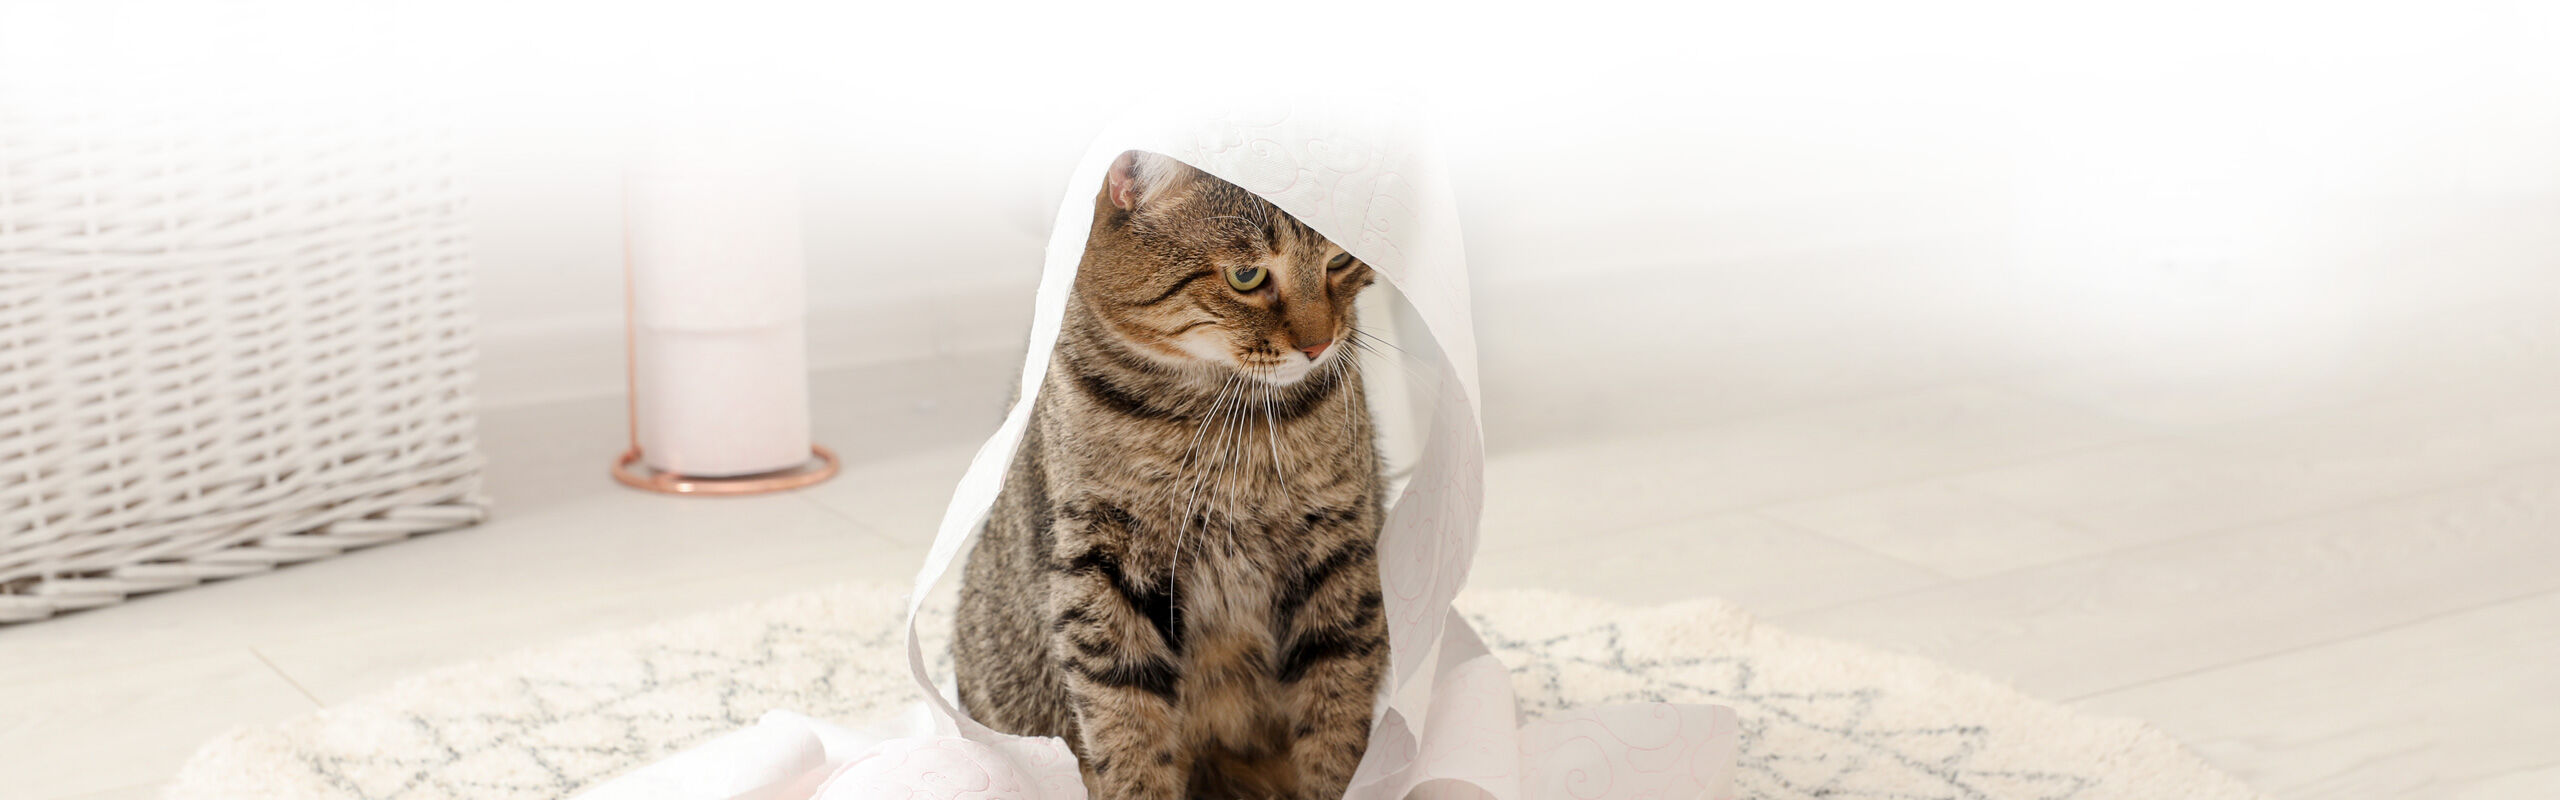 Katzen Katzenhaare Wohnung entfernen sauber halten